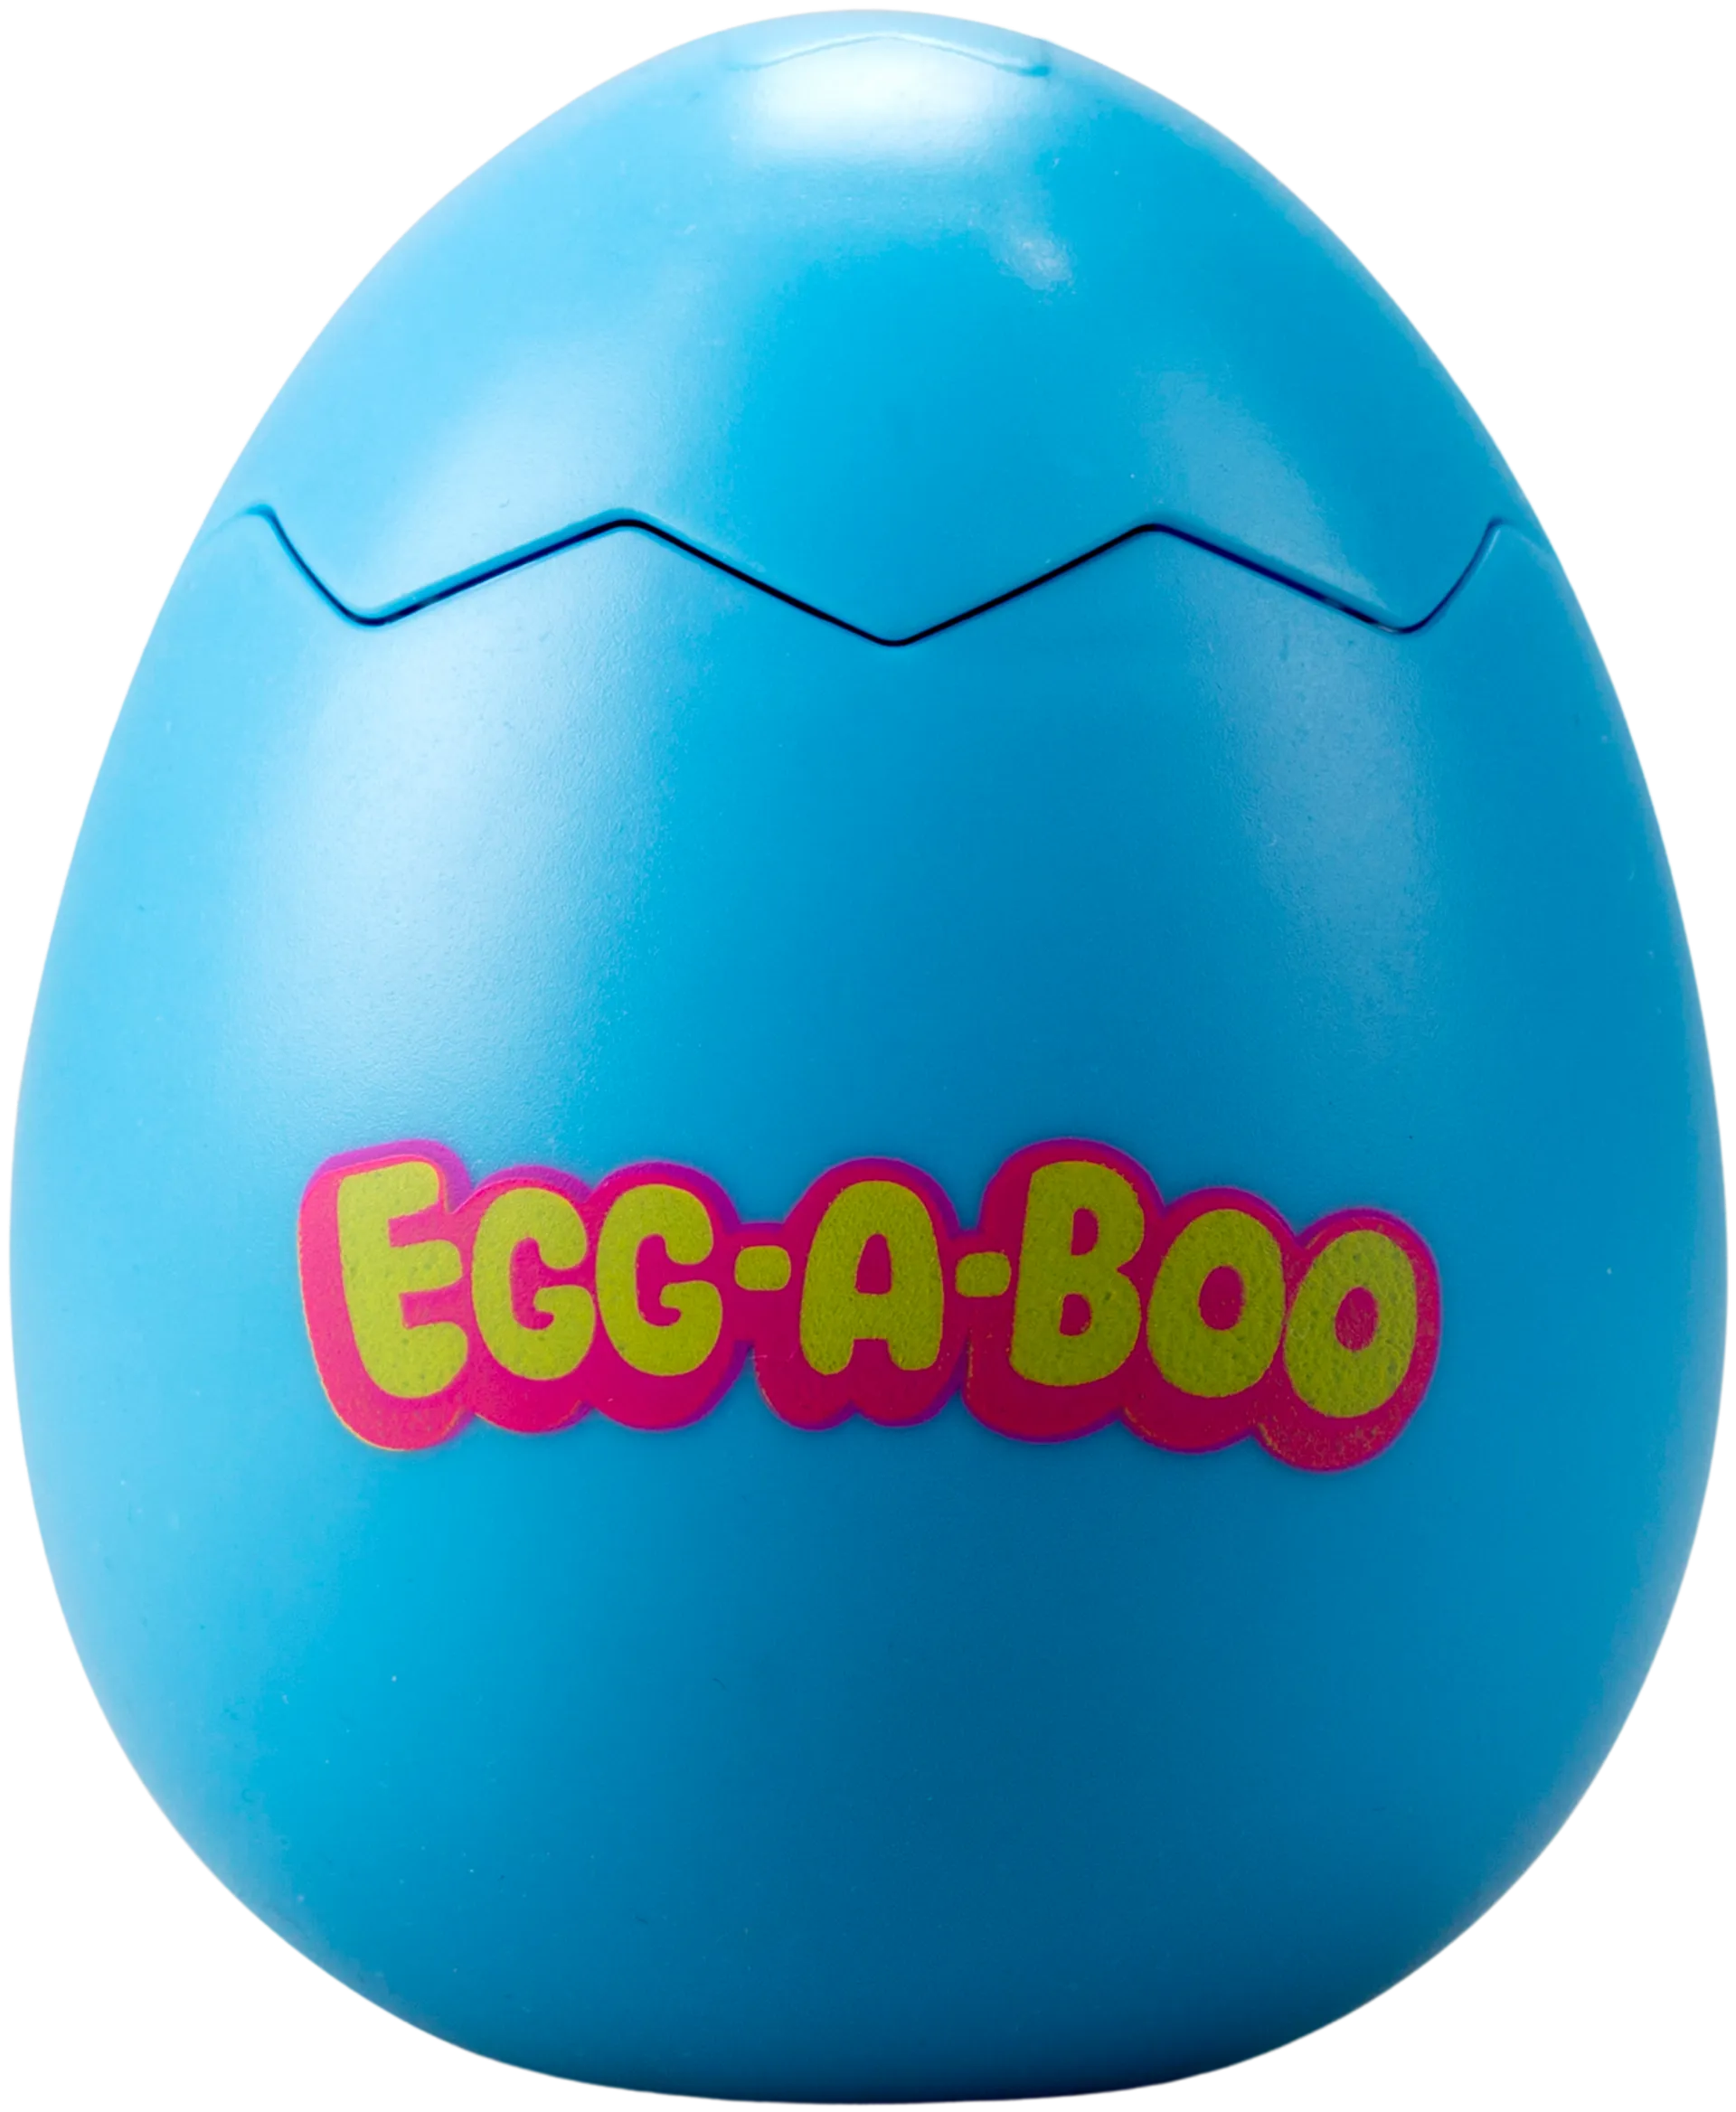 Silverlit leikkimuna Egg A Boo - 7